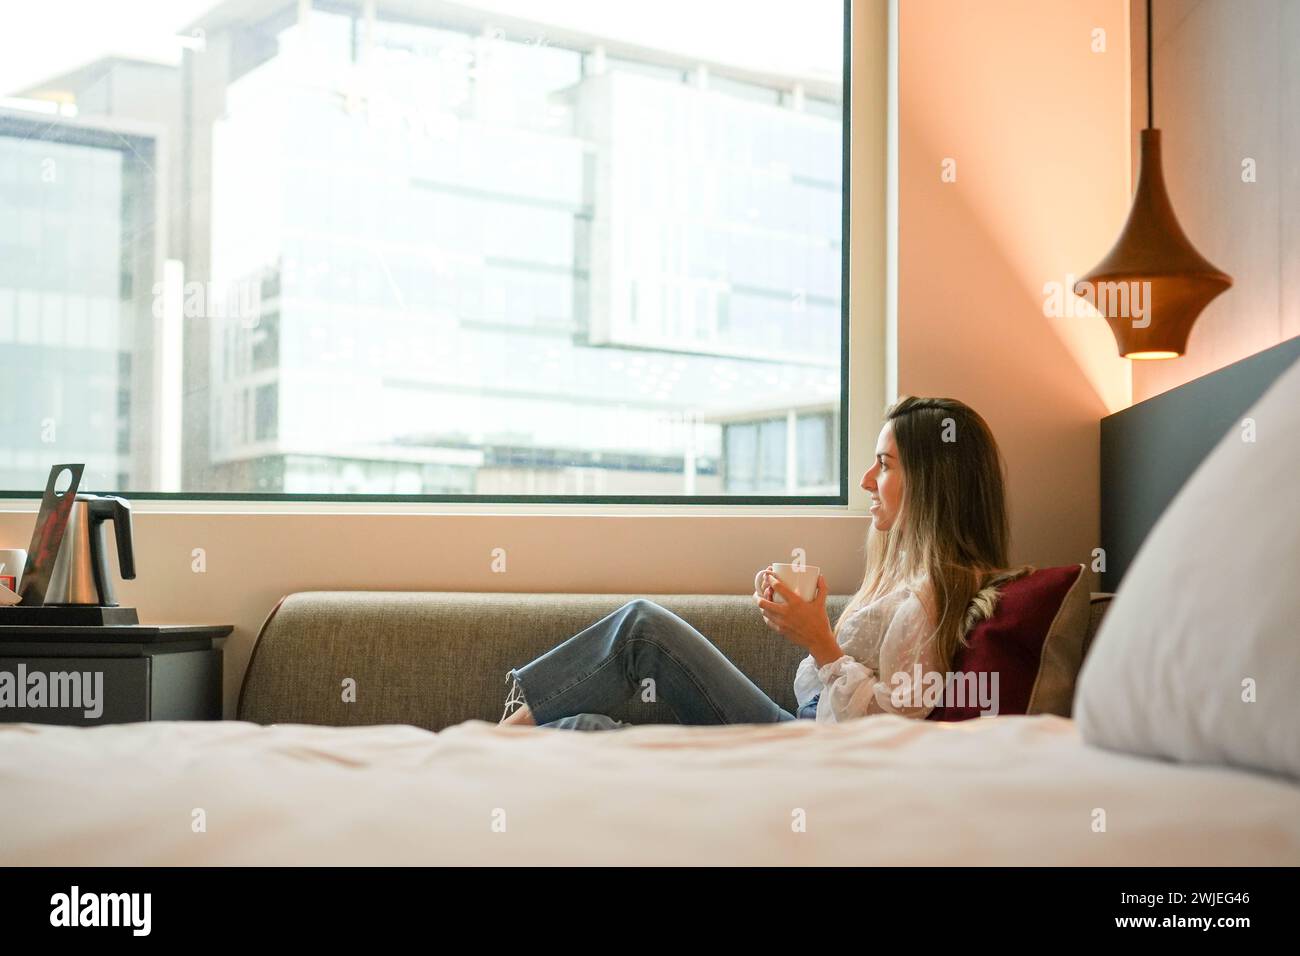 Una giovane donna è seduta comodamente vicino a una finestra in una camera d'albergo, tenendo una tazza con un tranquillo sfondo urbano, suggerendo un momento di relax o di relax Foto Stock